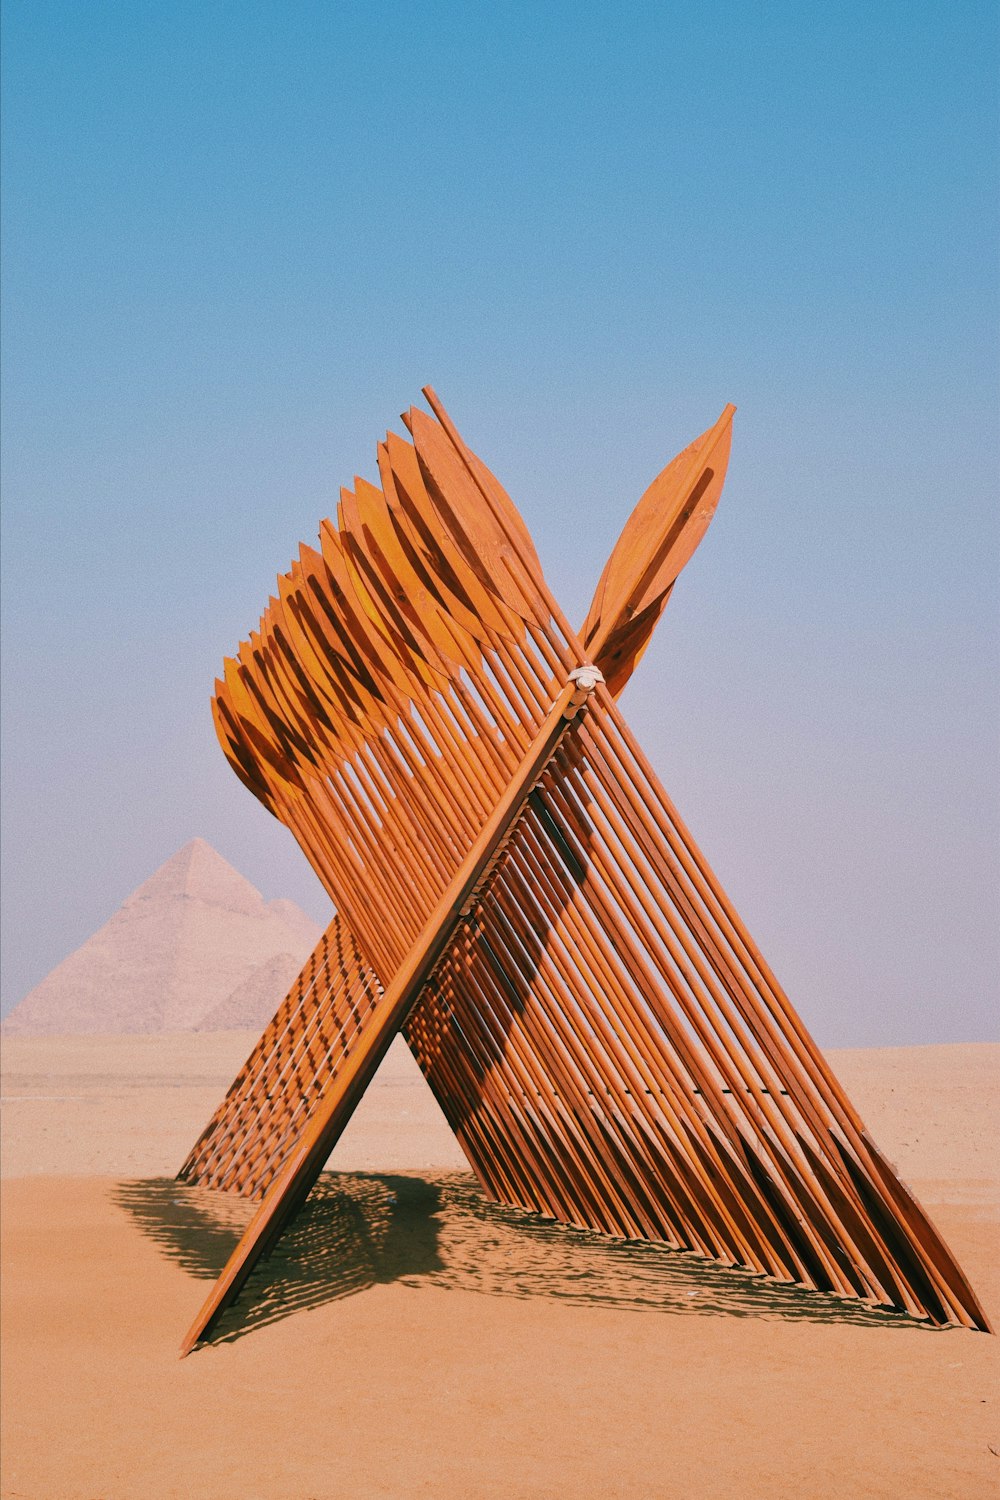 Una gran escultura de madera sentada en medio de un desierto